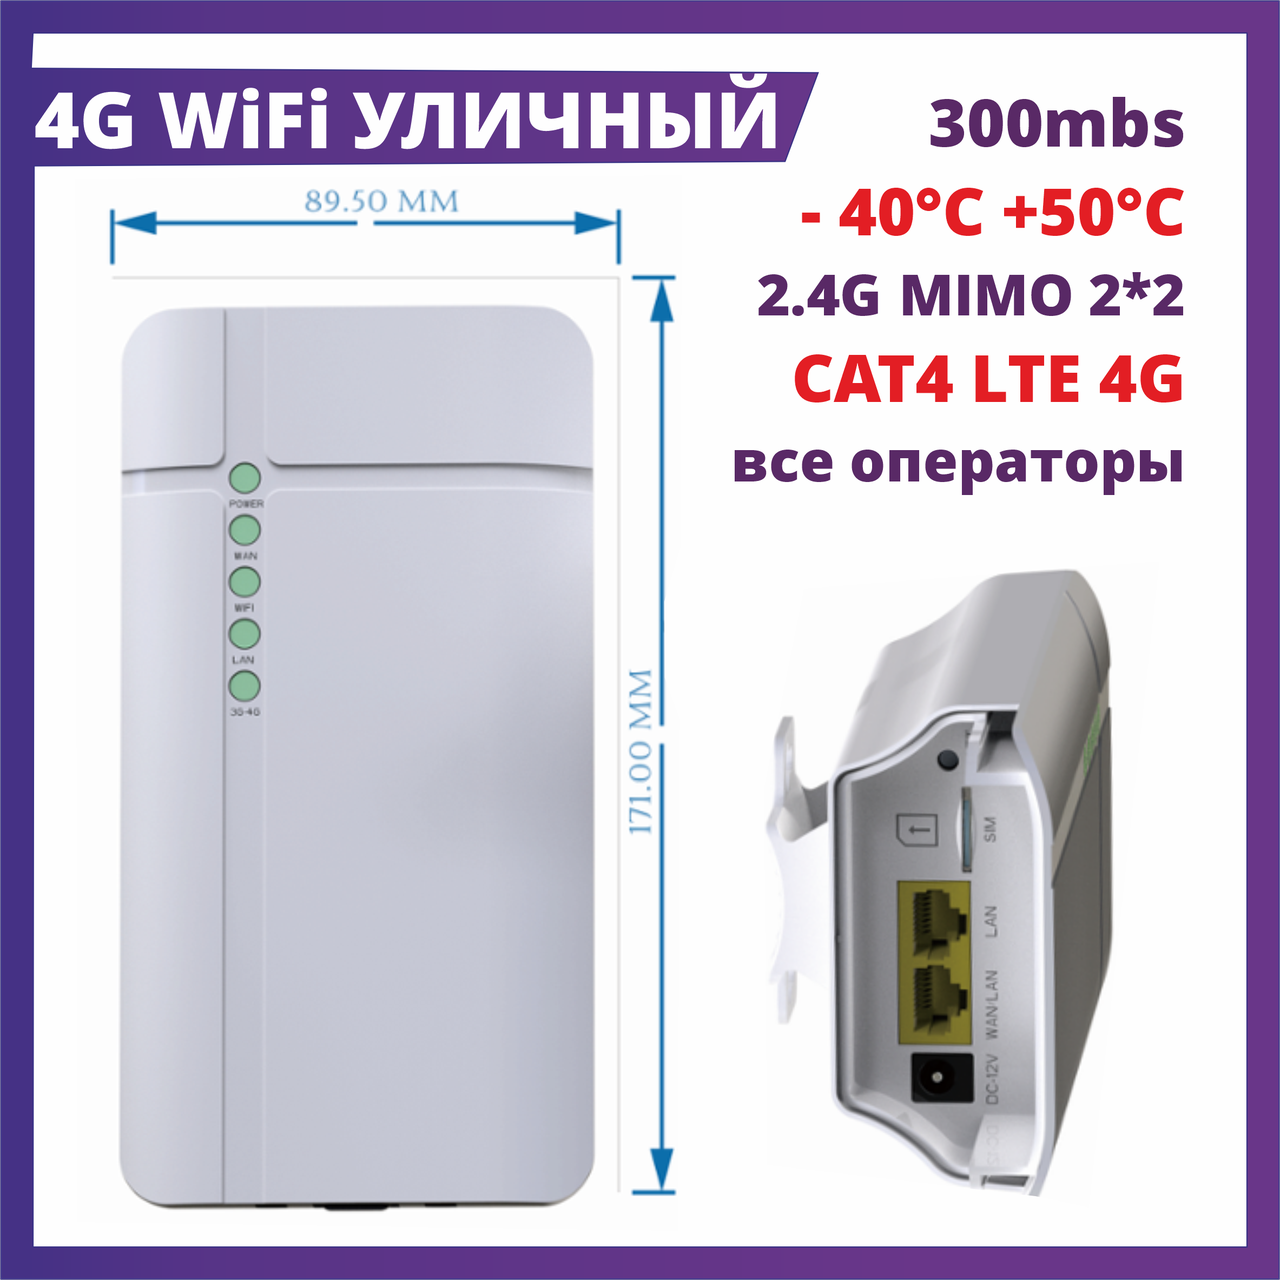 Уличный модем роутер 4G 3G LTE WiFi  беспроводной 300 мб/с SIM карты СИМ Tele2 Билайн Актив Kcell Altel